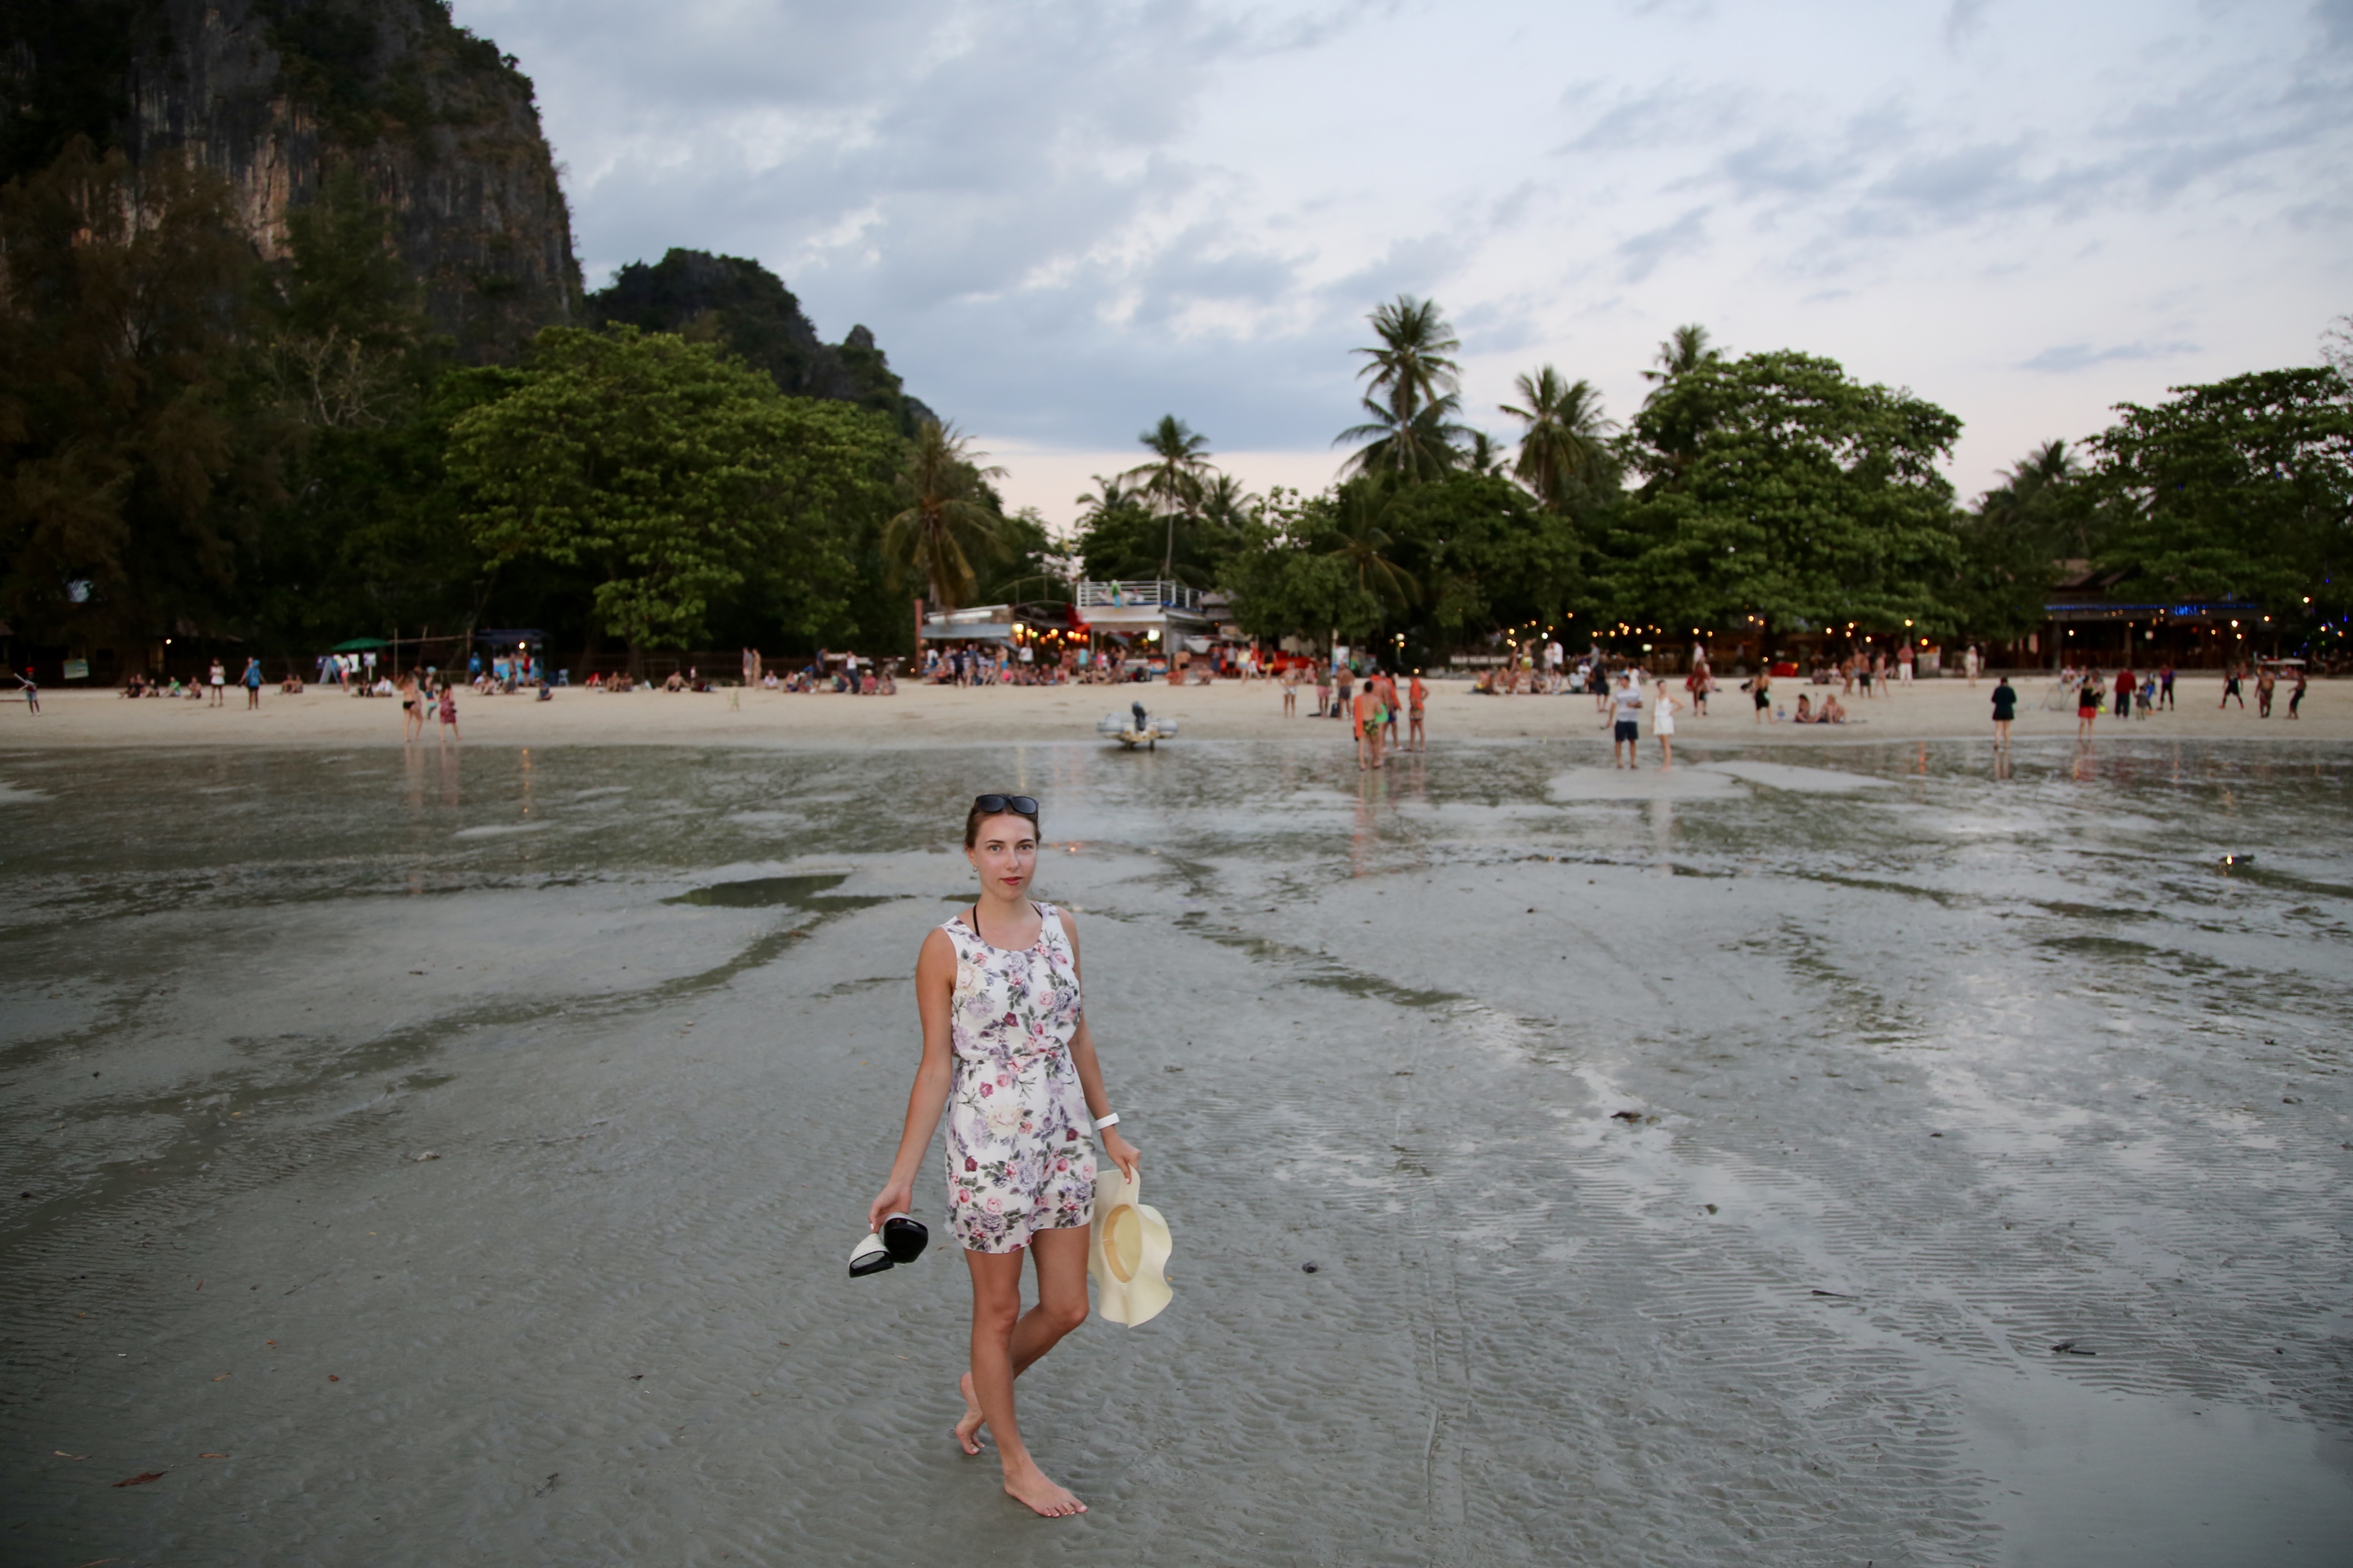 Railay beach, Thailand